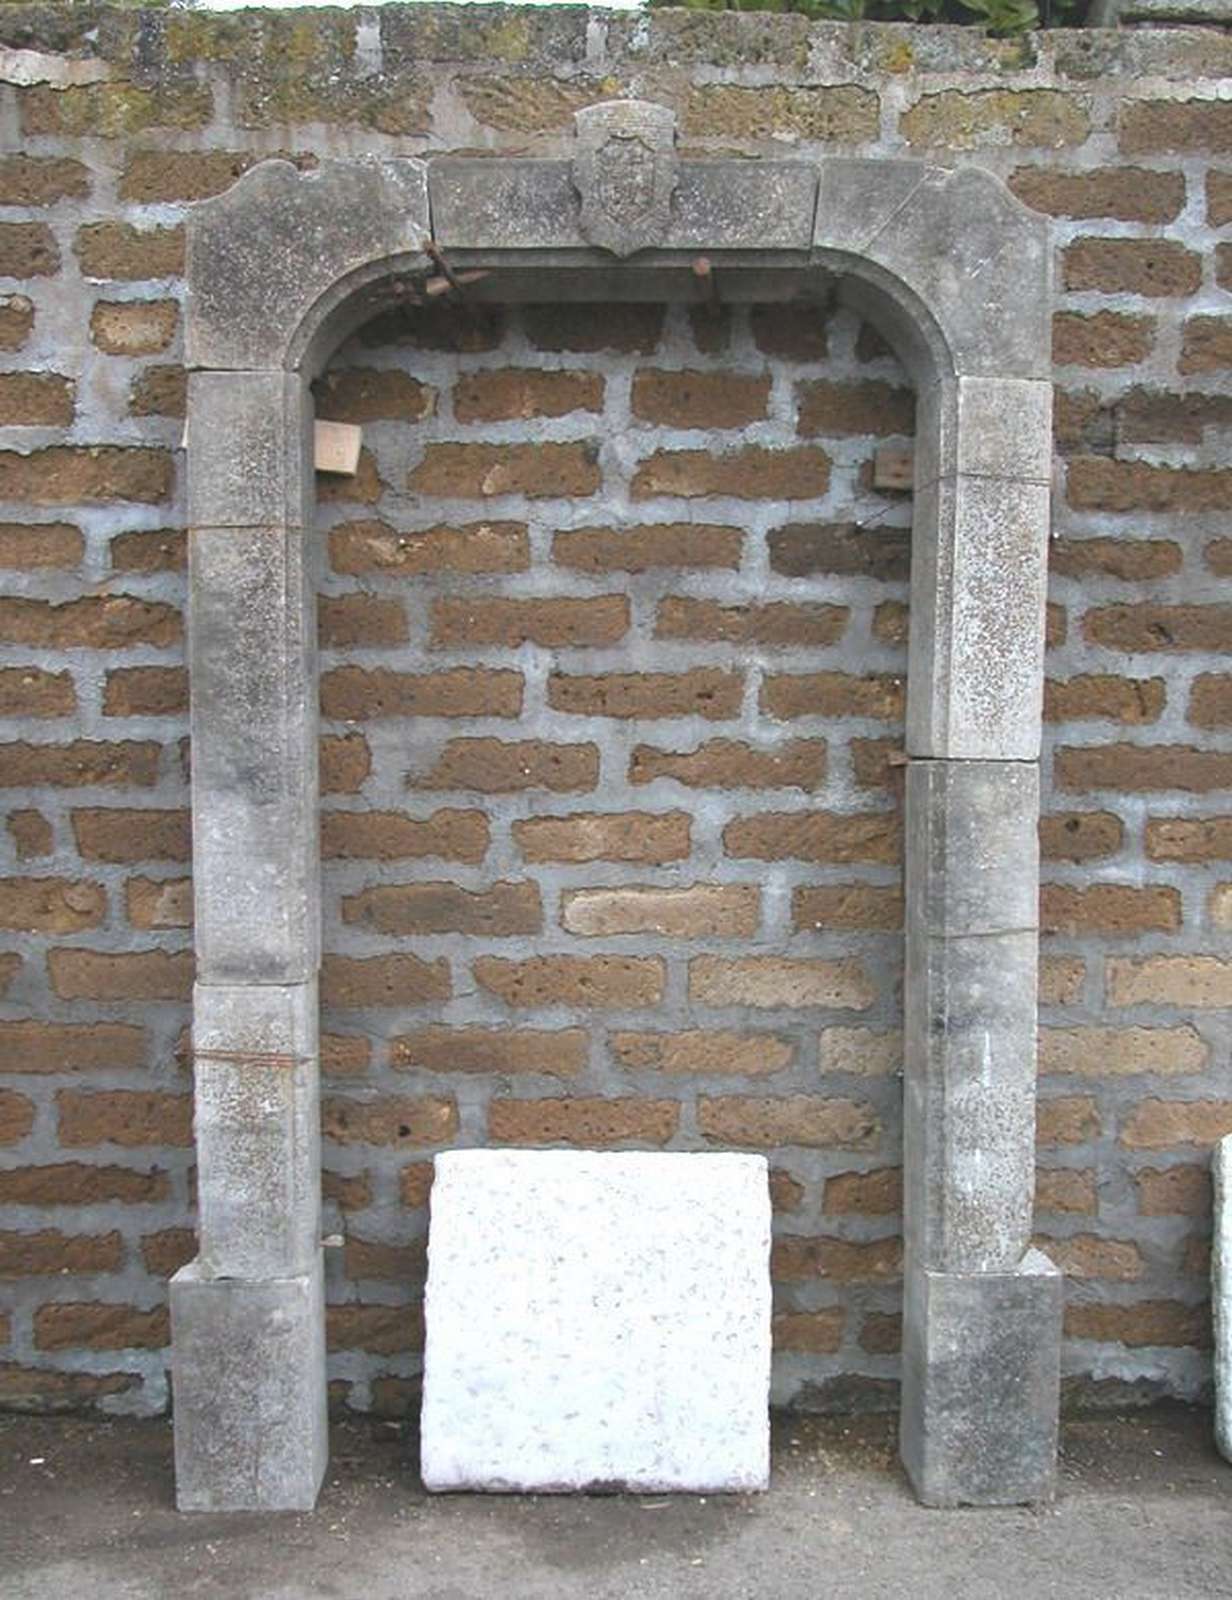 Antico portale in pietra. Datato 1929. - Portali, Finestre e Cornici - Architettura - Prodotti - Antichità Fiorillo